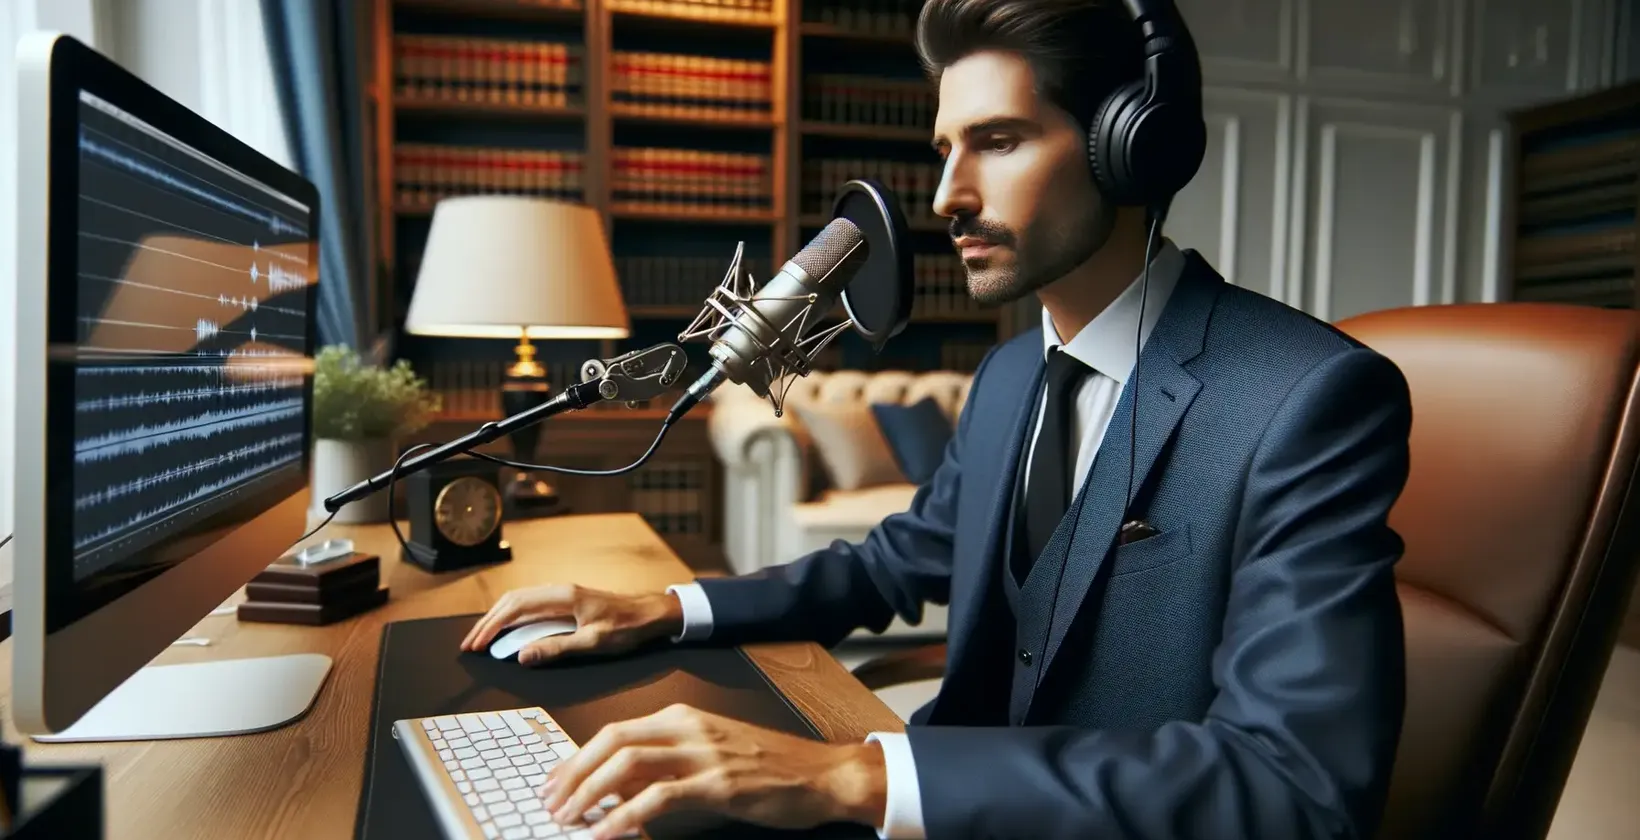 Адвокат в костюм, който използва софтуер за транскрипция, за да анализира правни записи.